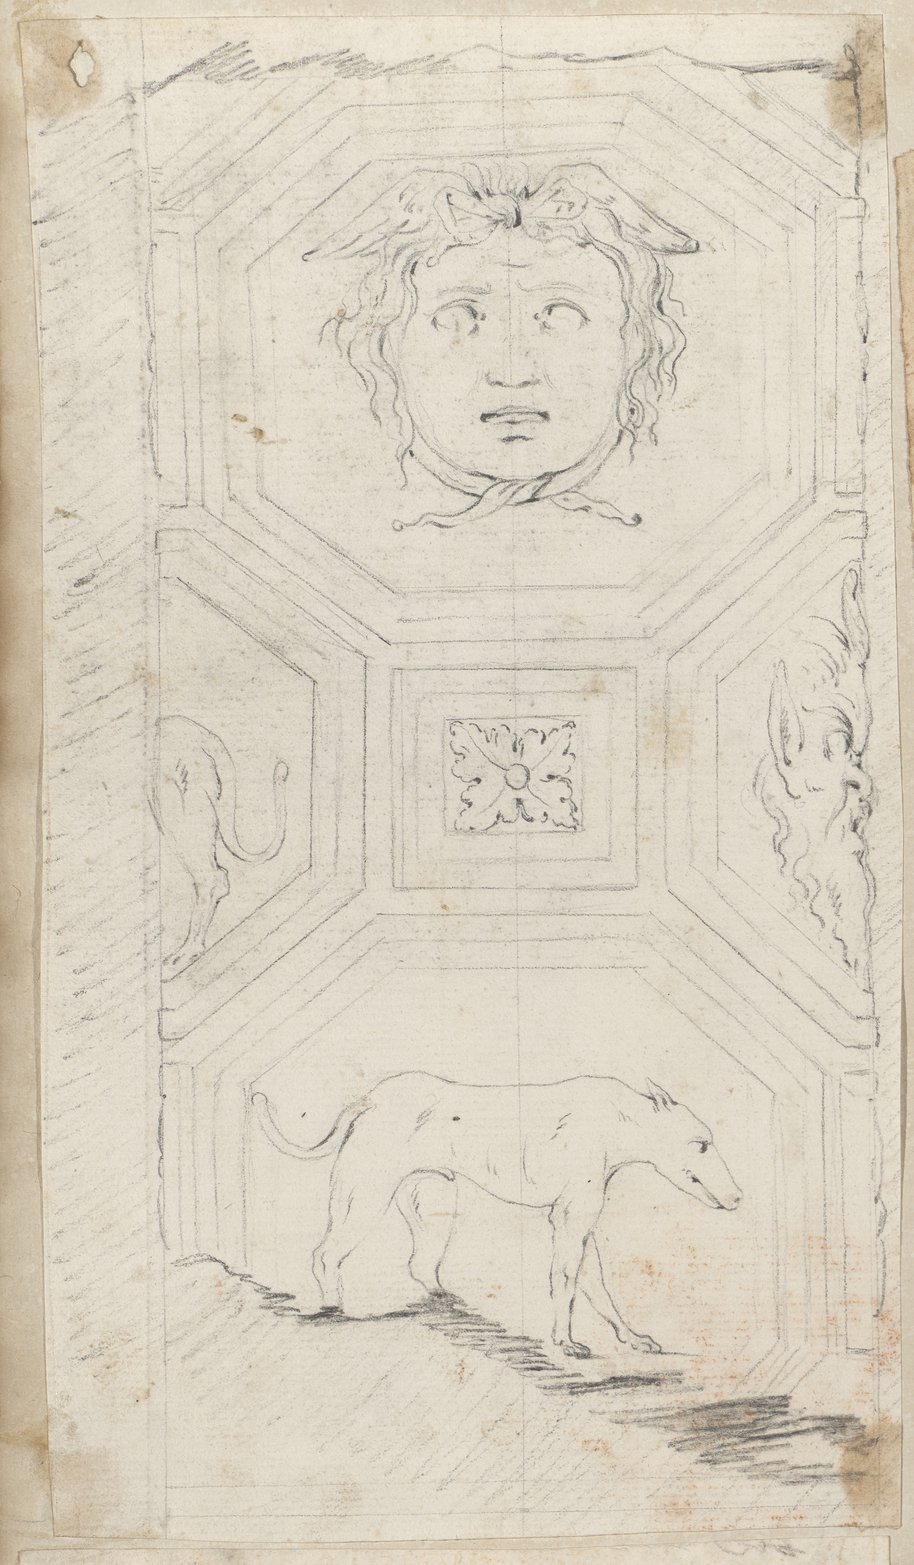 Auflichtaufnahme Kassettiertes Säulenfragment mit Masken, Hunden und Rosetten, in Kreide gezeichnet